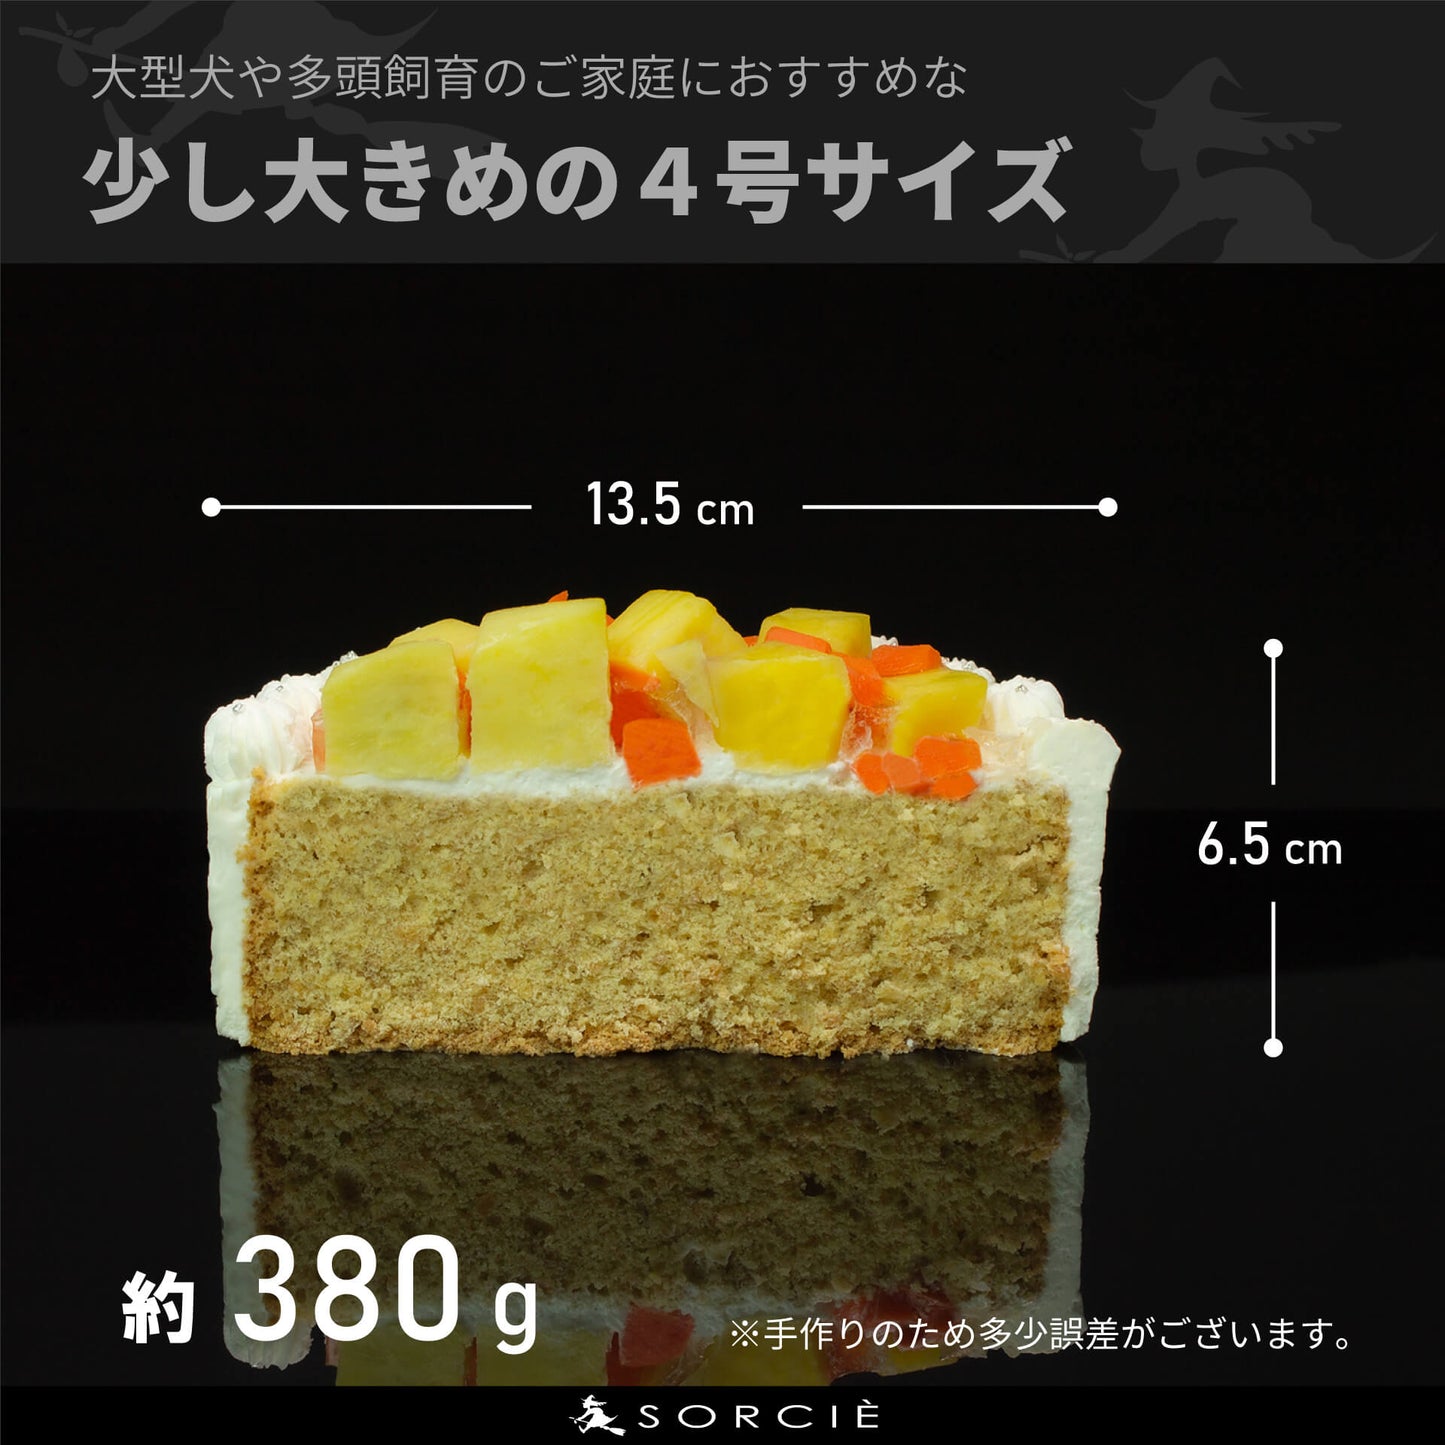 【宅配】犬用 クリームデコレーションケーキ ボーンクッキー4枚付